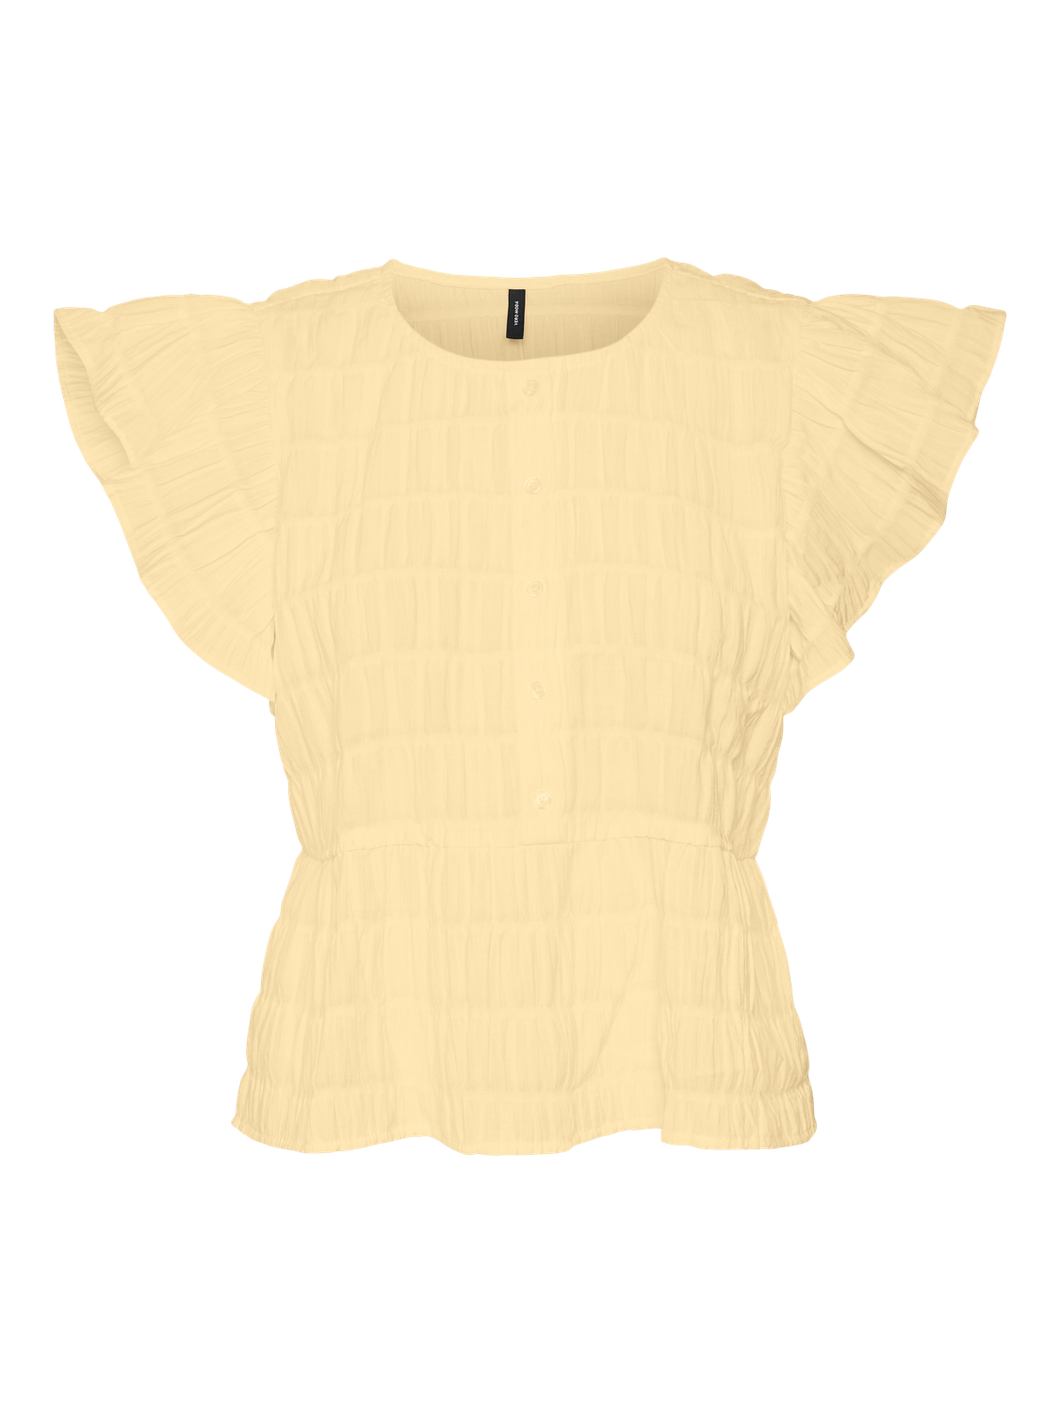 VMERMA T-Shirts & Tops - Flan